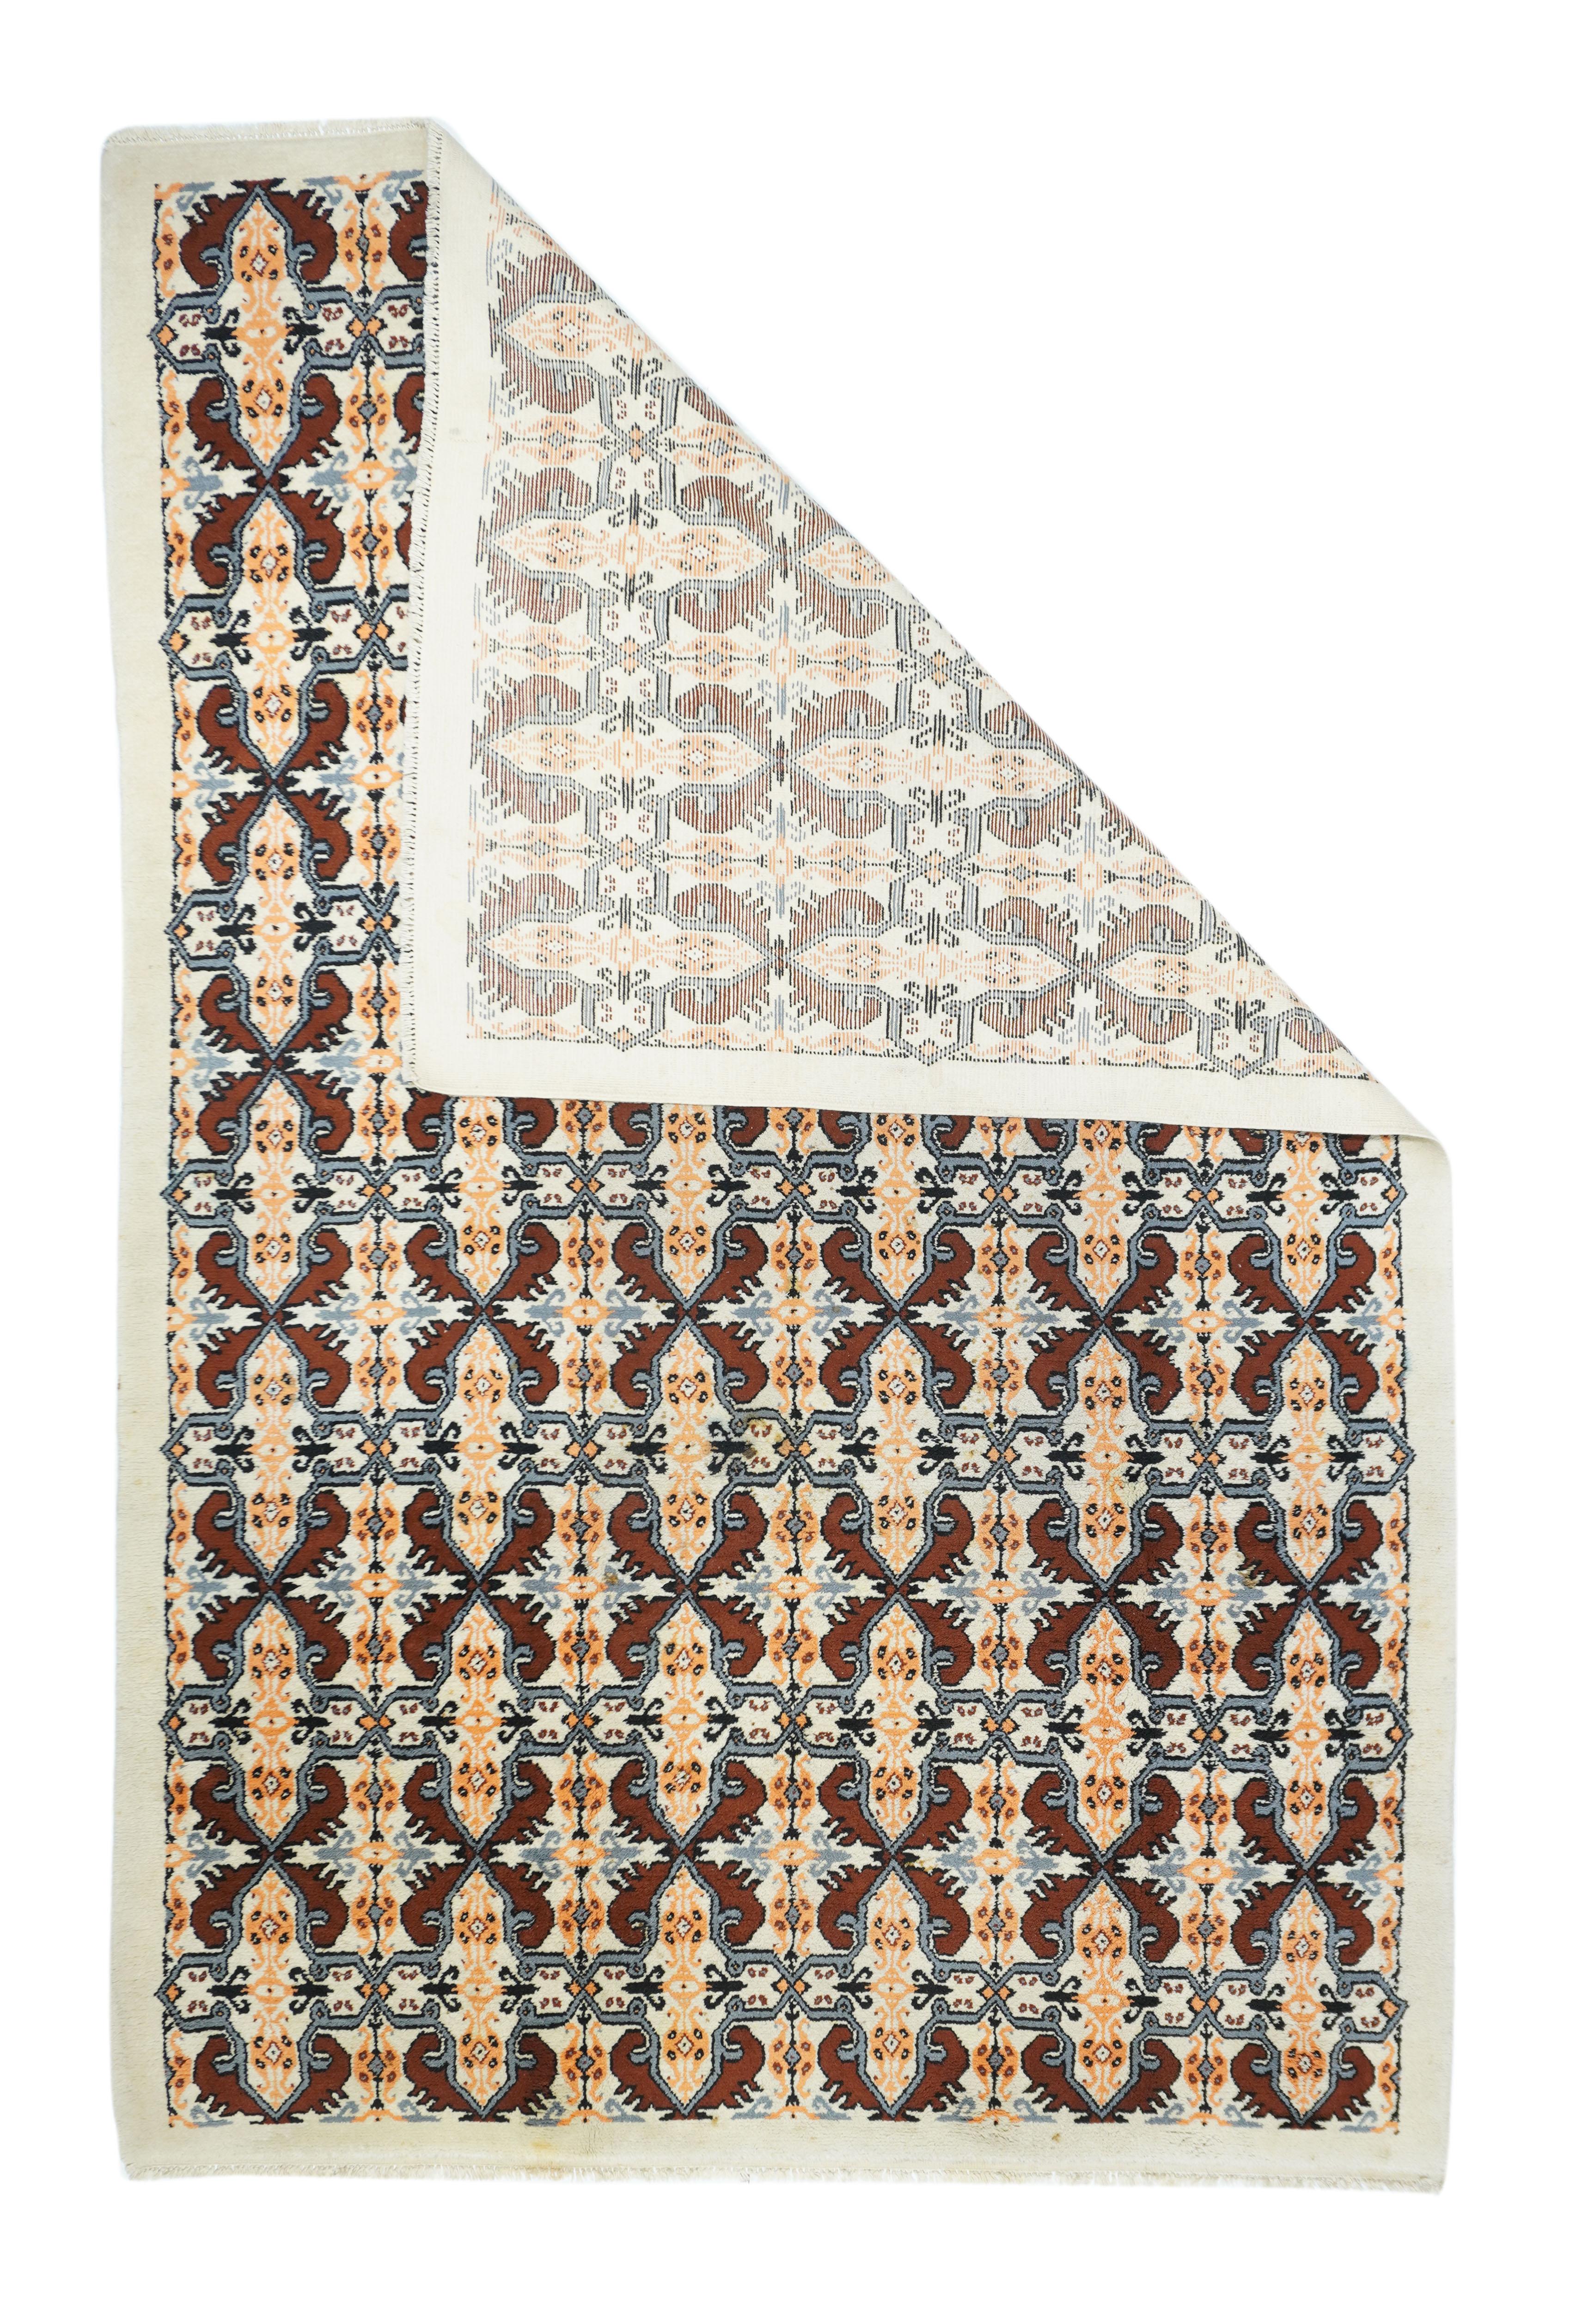 Vintage Moroccan Rug 6'4'' x 10'. Der Sandgrund zeigt ein allover ineinandergreifendes Kachelmuster aus runden Oktogrammen und Kreuzen. Rote, grüne und khakifarbene Akzente. Einfarbiger, unifarbener Rand. Für eine Version, ebenfalls mit